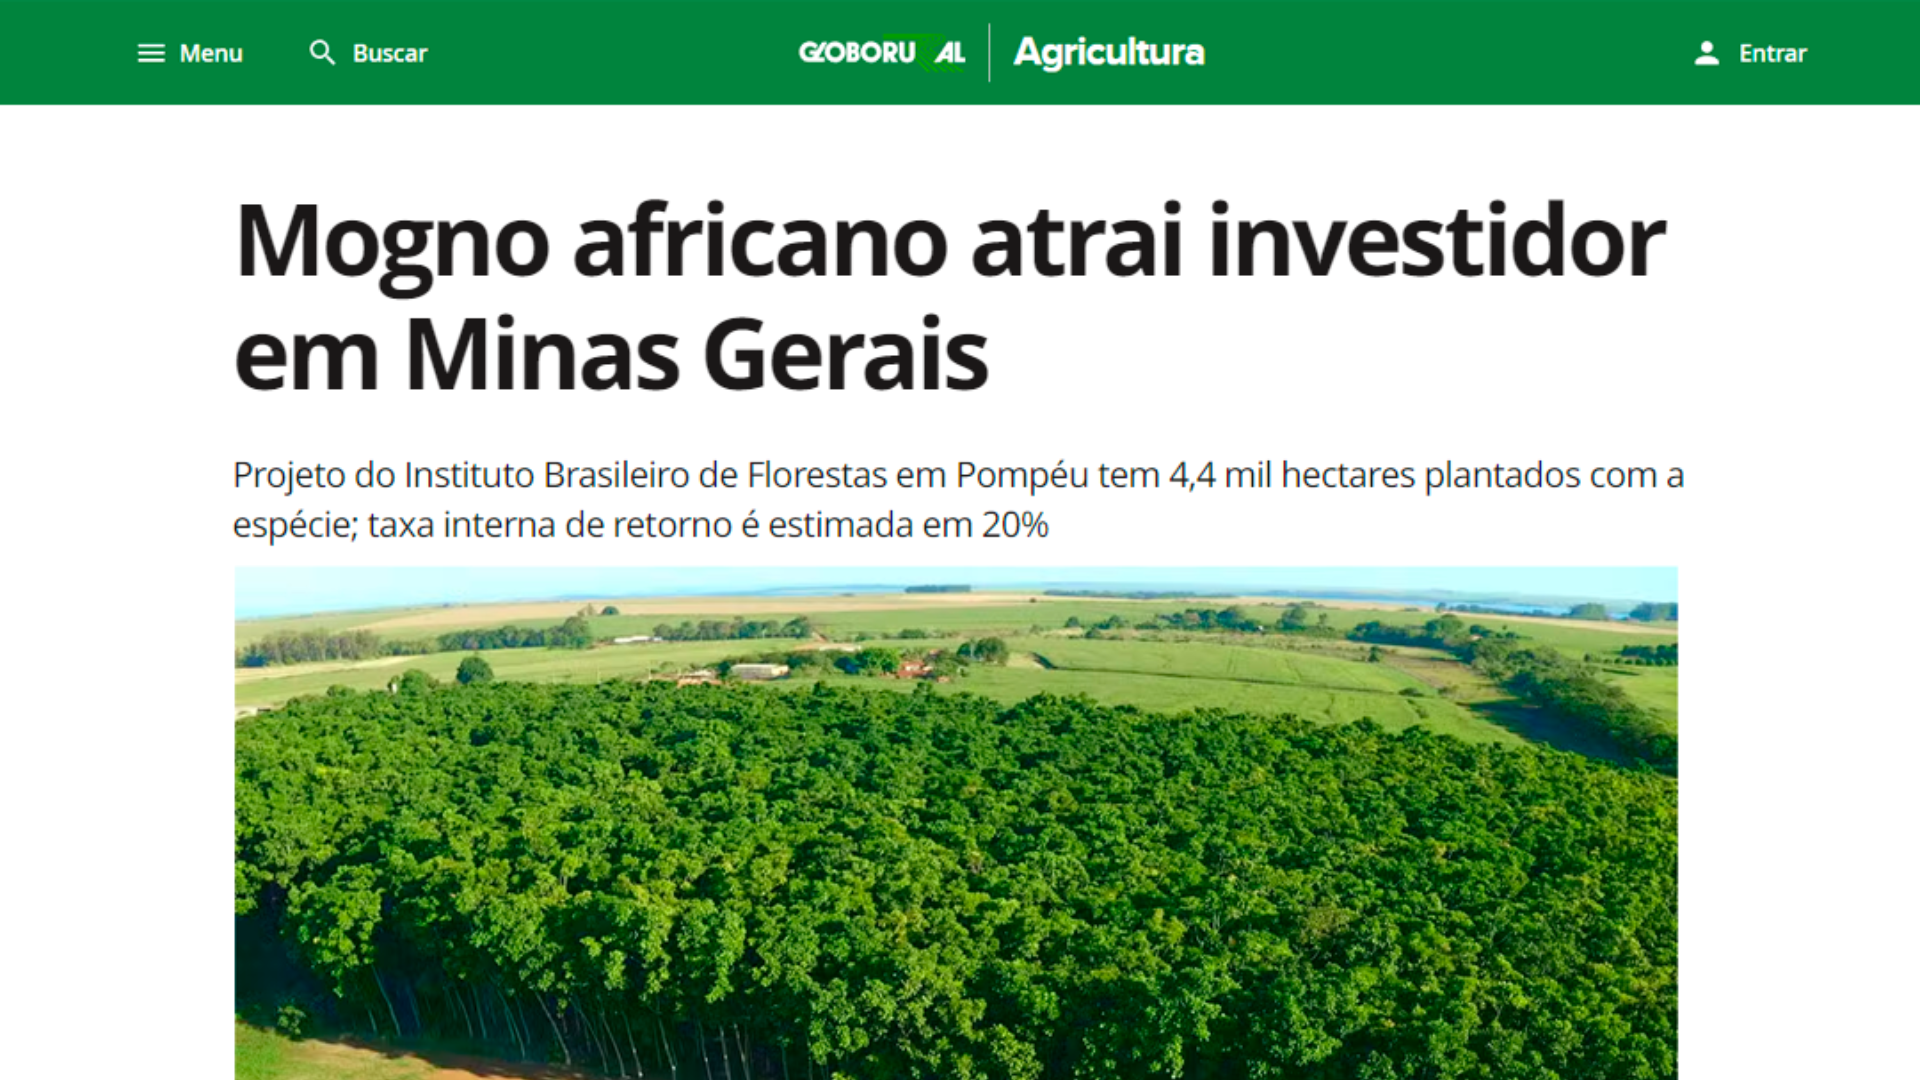 mogno-africano-atrai-investidor-em-minas-gerais